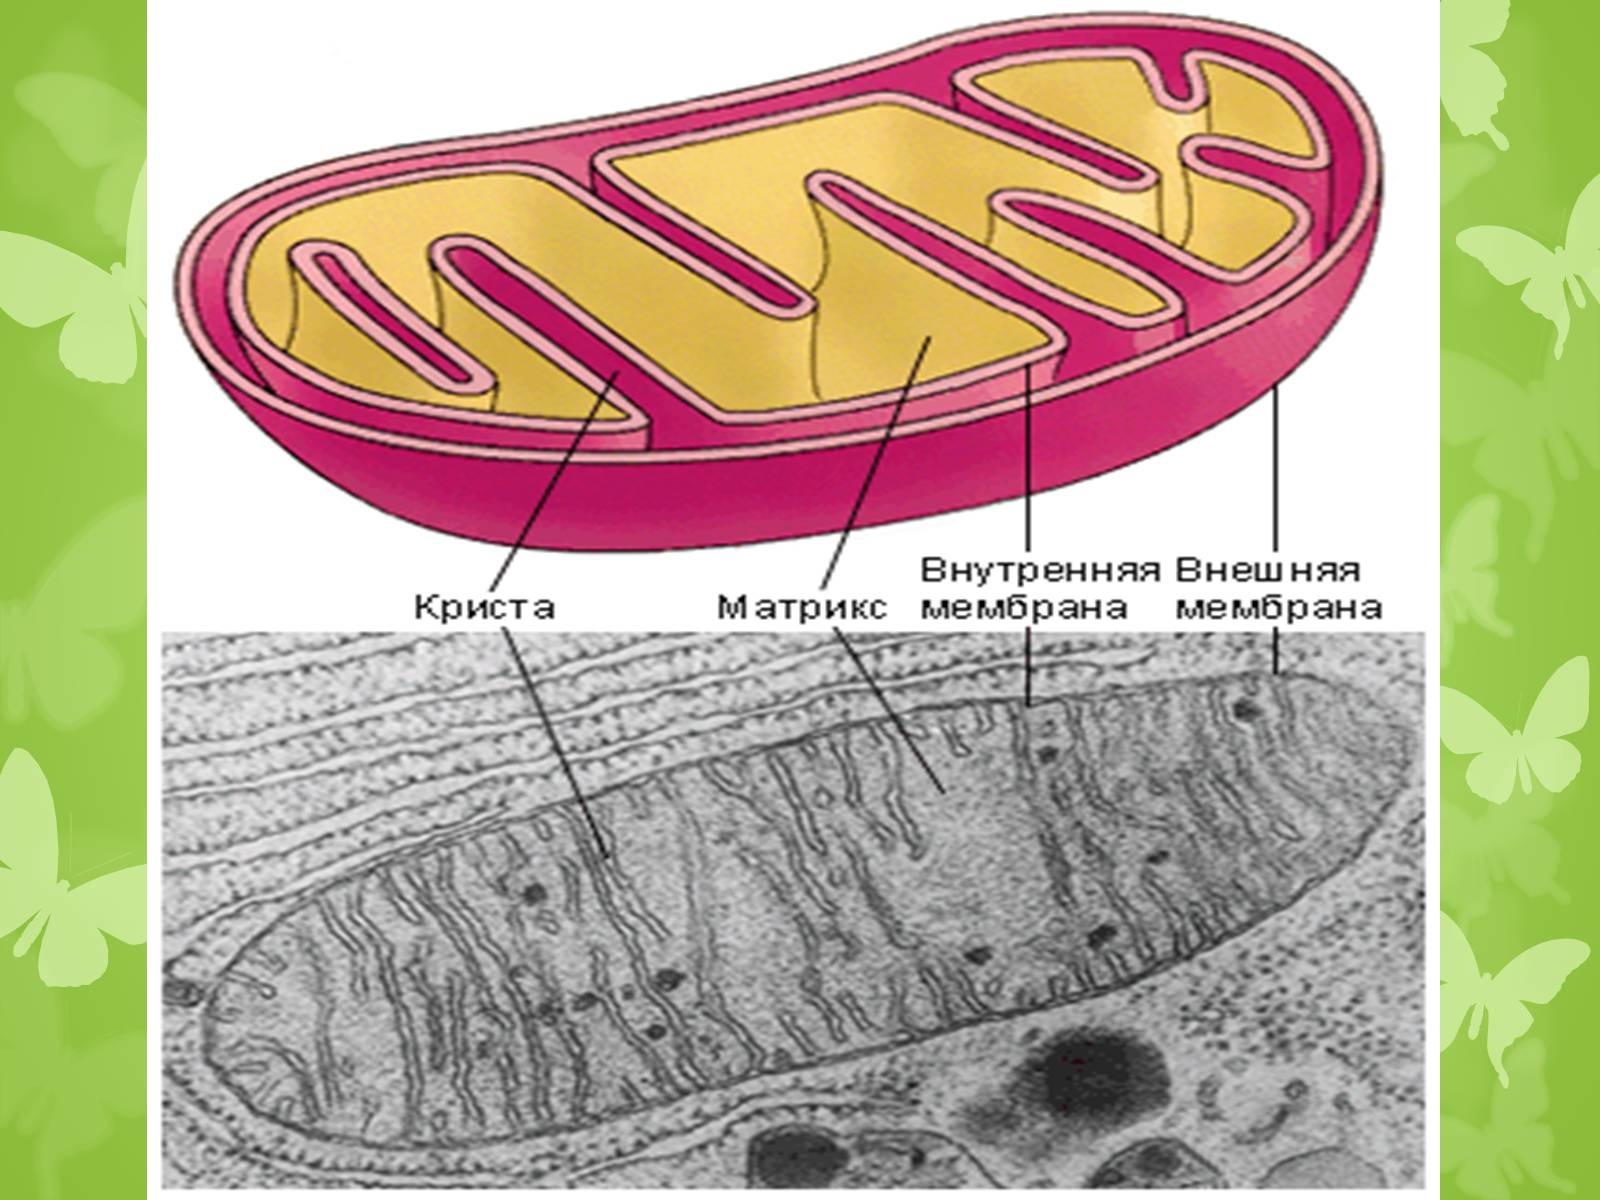 Внутреннее строение митохондрии. Митохондрии рисунок. Митохондрии рисунок легкий. Митохондрии растительной клетки. Рисунок митохондрии клетки.